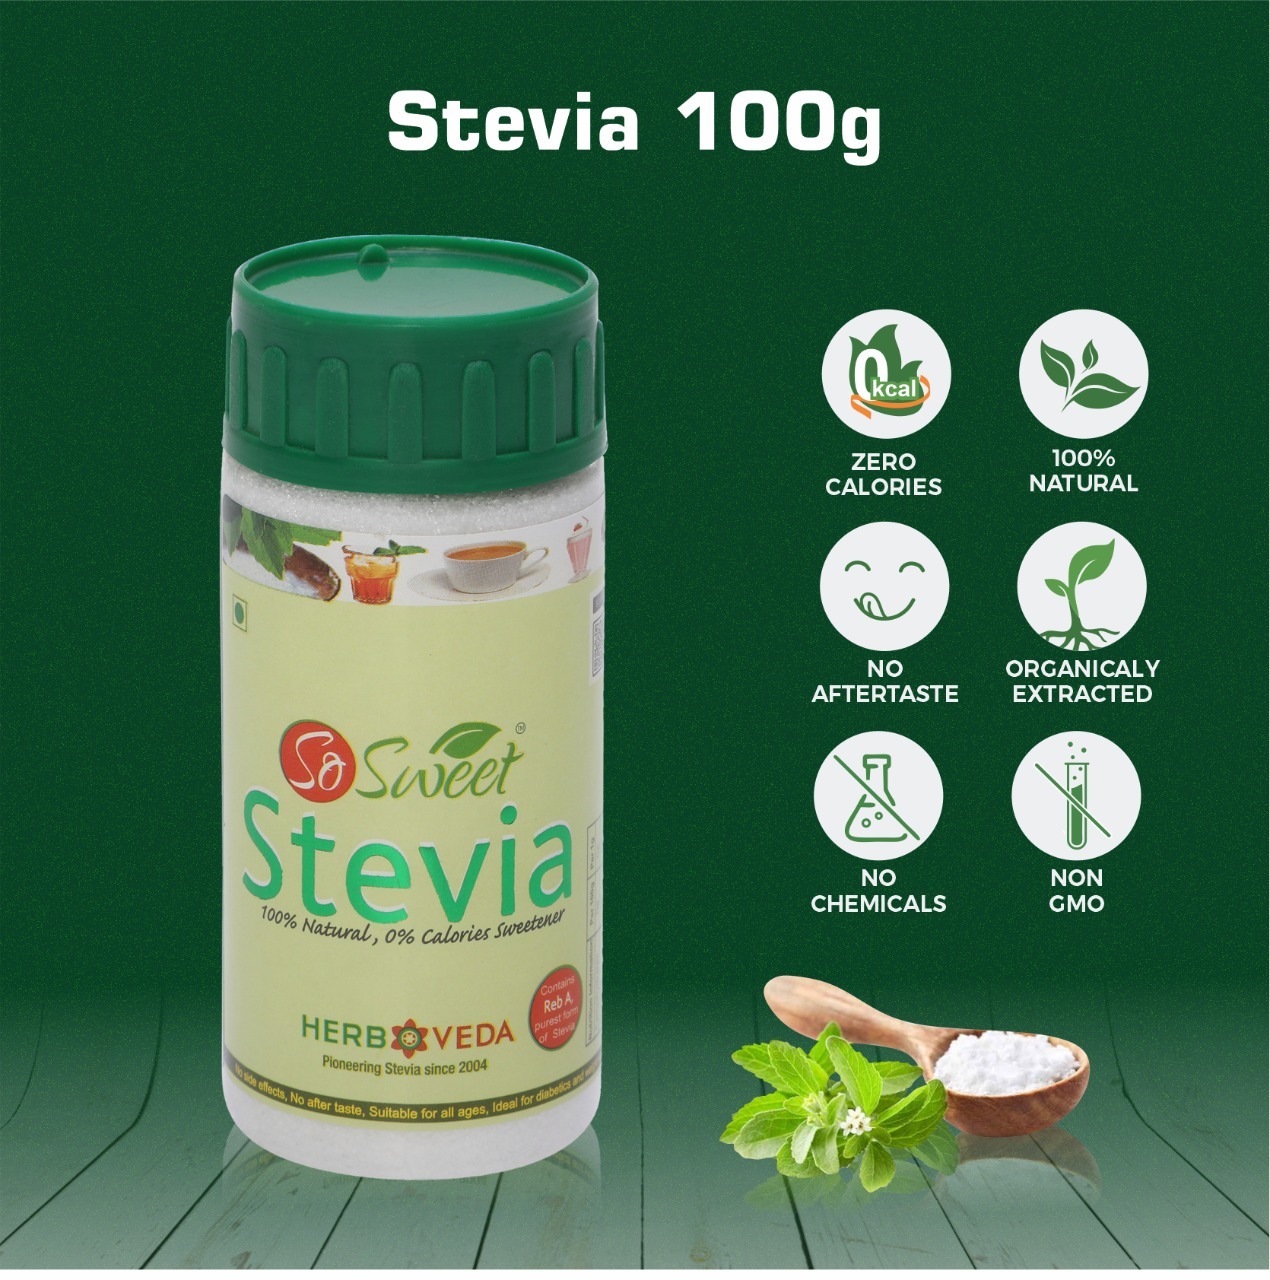 So Sweet Stevia 100 gm Spoonable Bottle